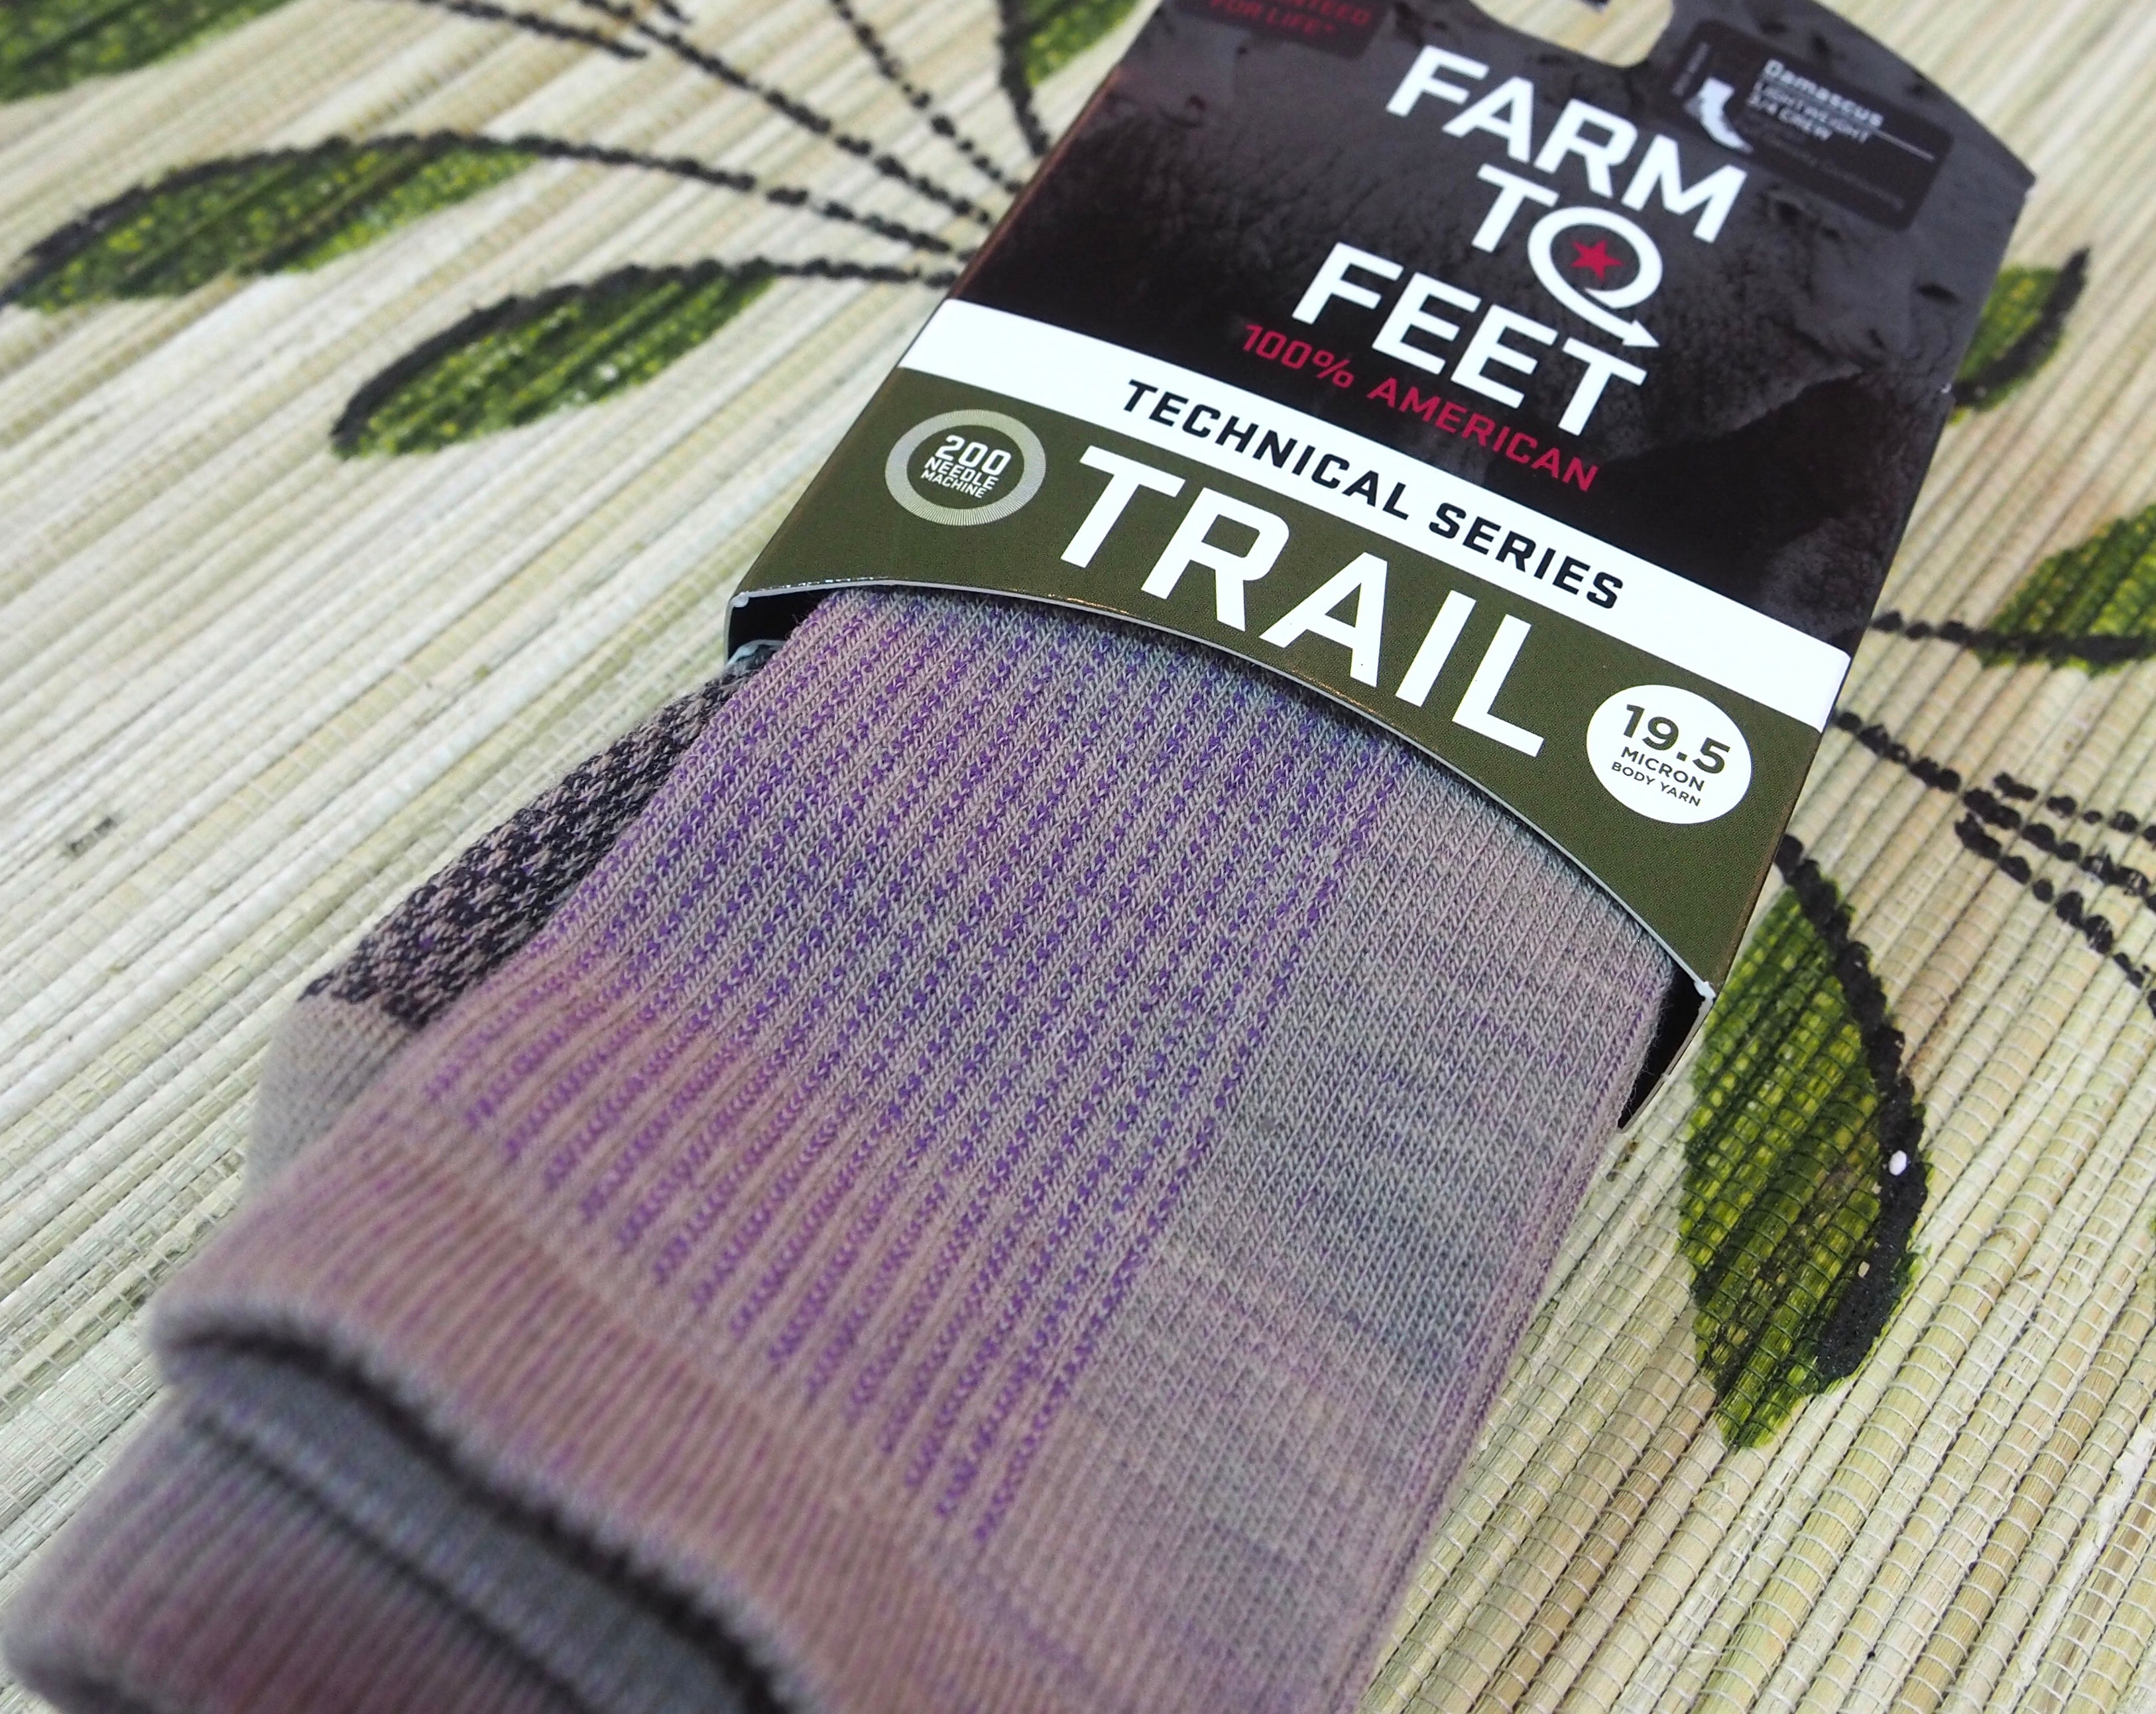 Farm to Feet Trail 3/4 Crew Tan Socks